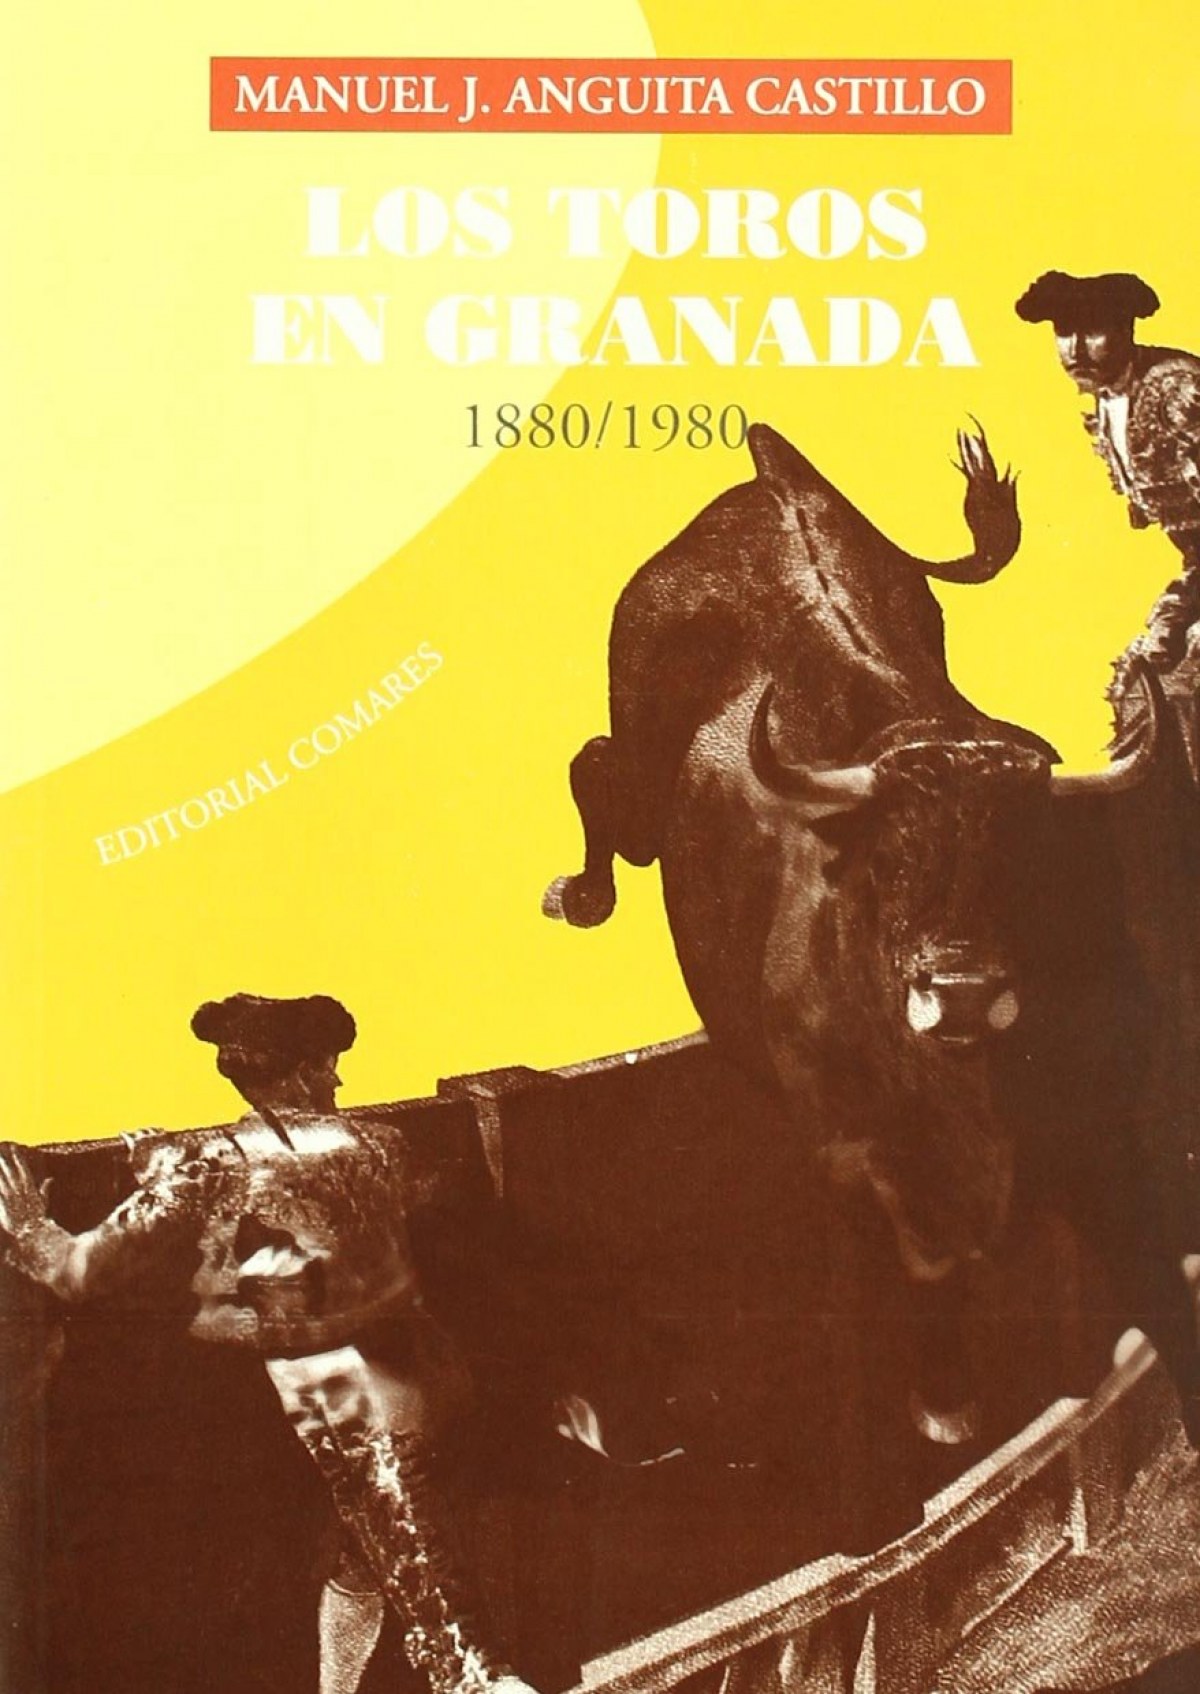 Los toros en granada 1880/1980 - Anguita Castillo, Manuel J.